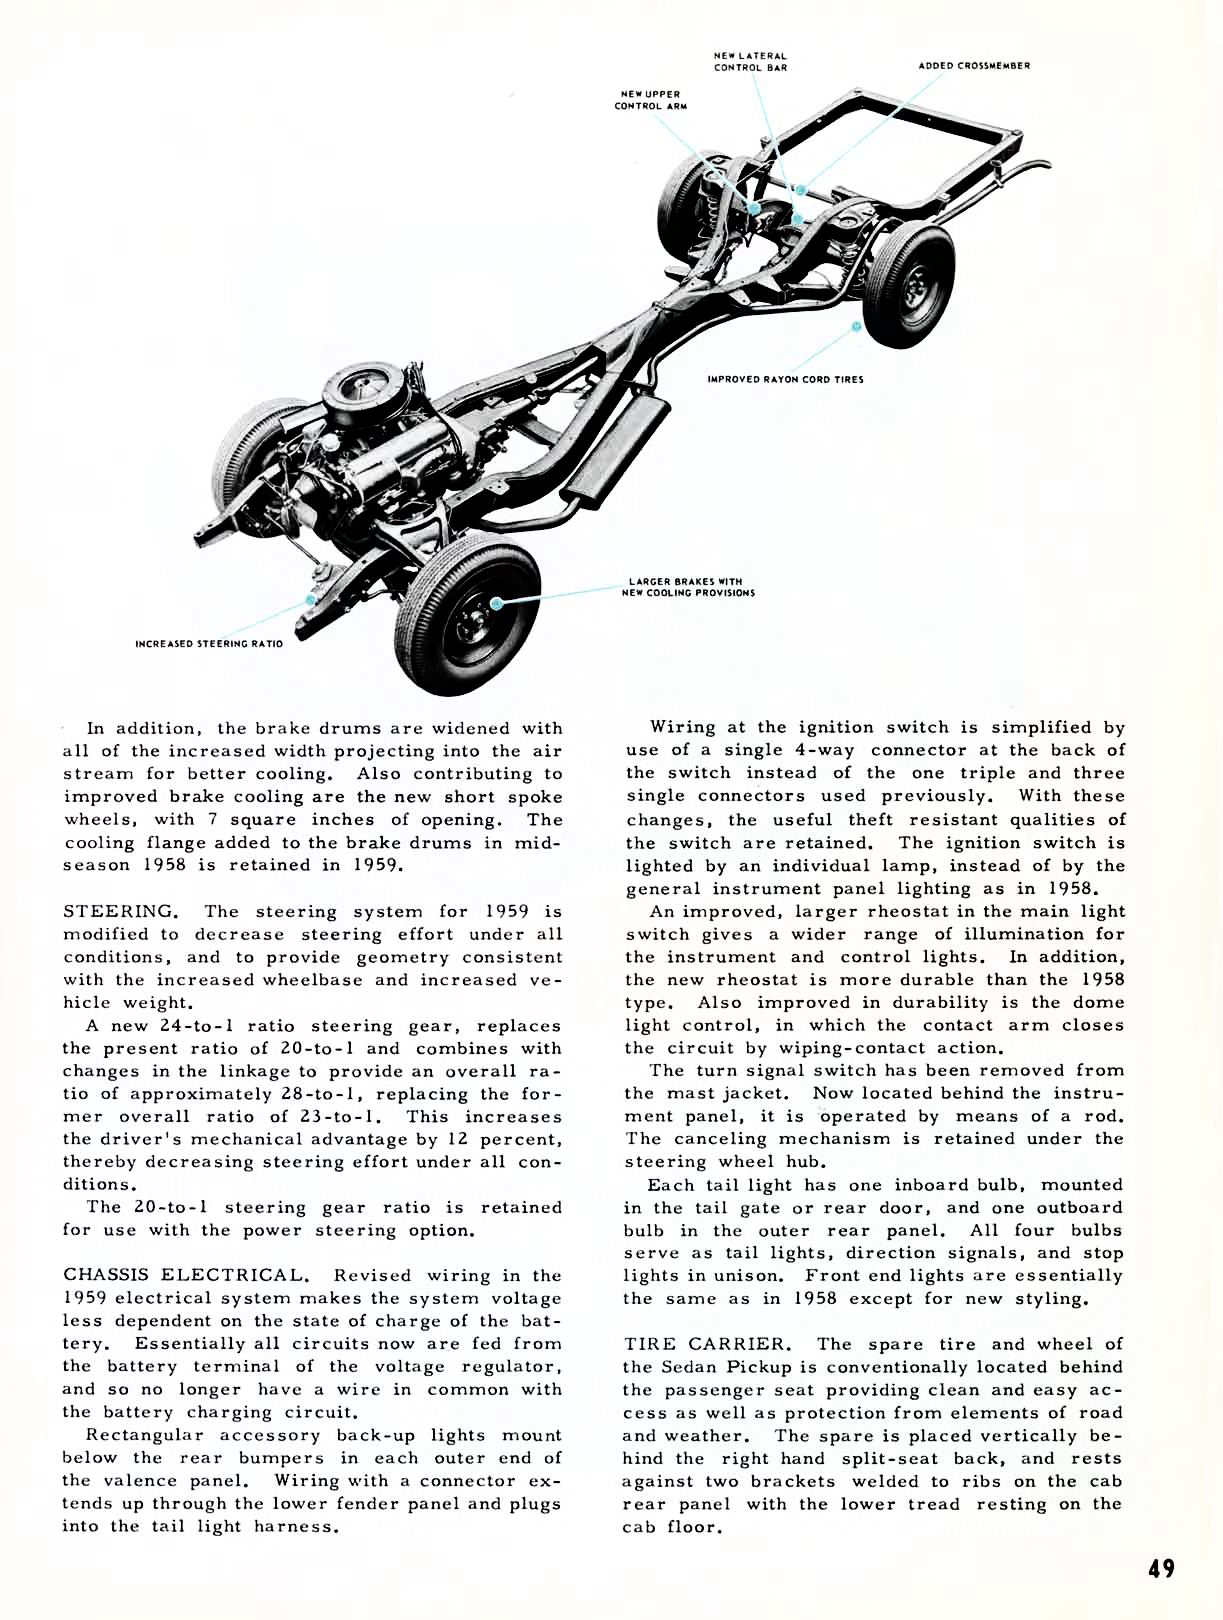 1959 Chevrolet Truck Engineering Features-49